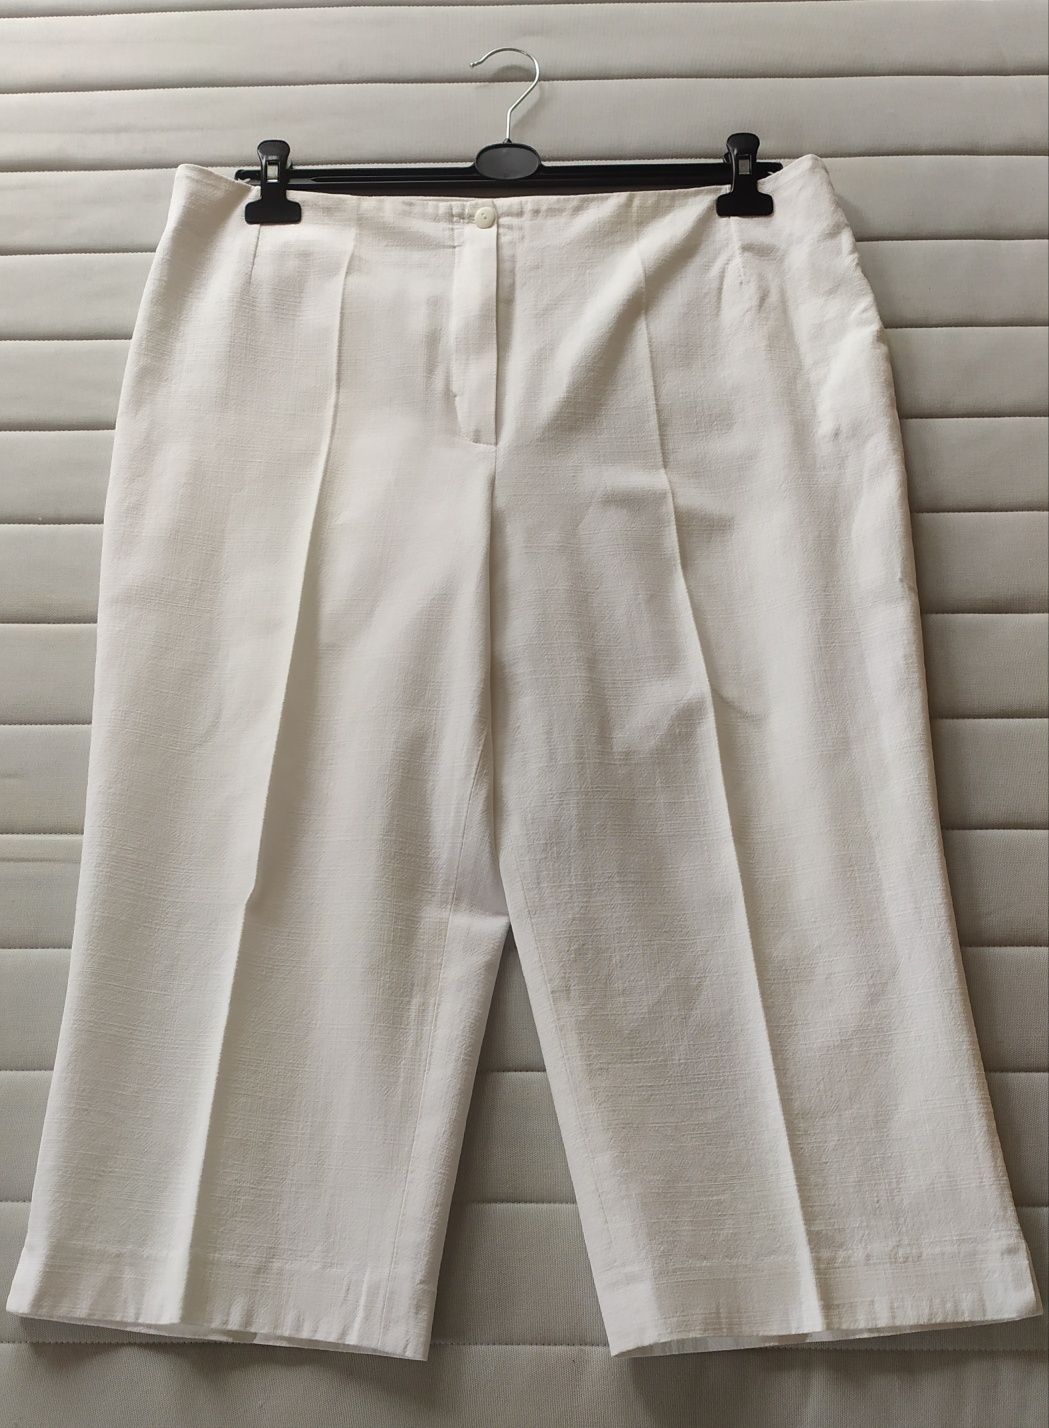 Spodnie lniane białe dł. 3/4 roz. 46